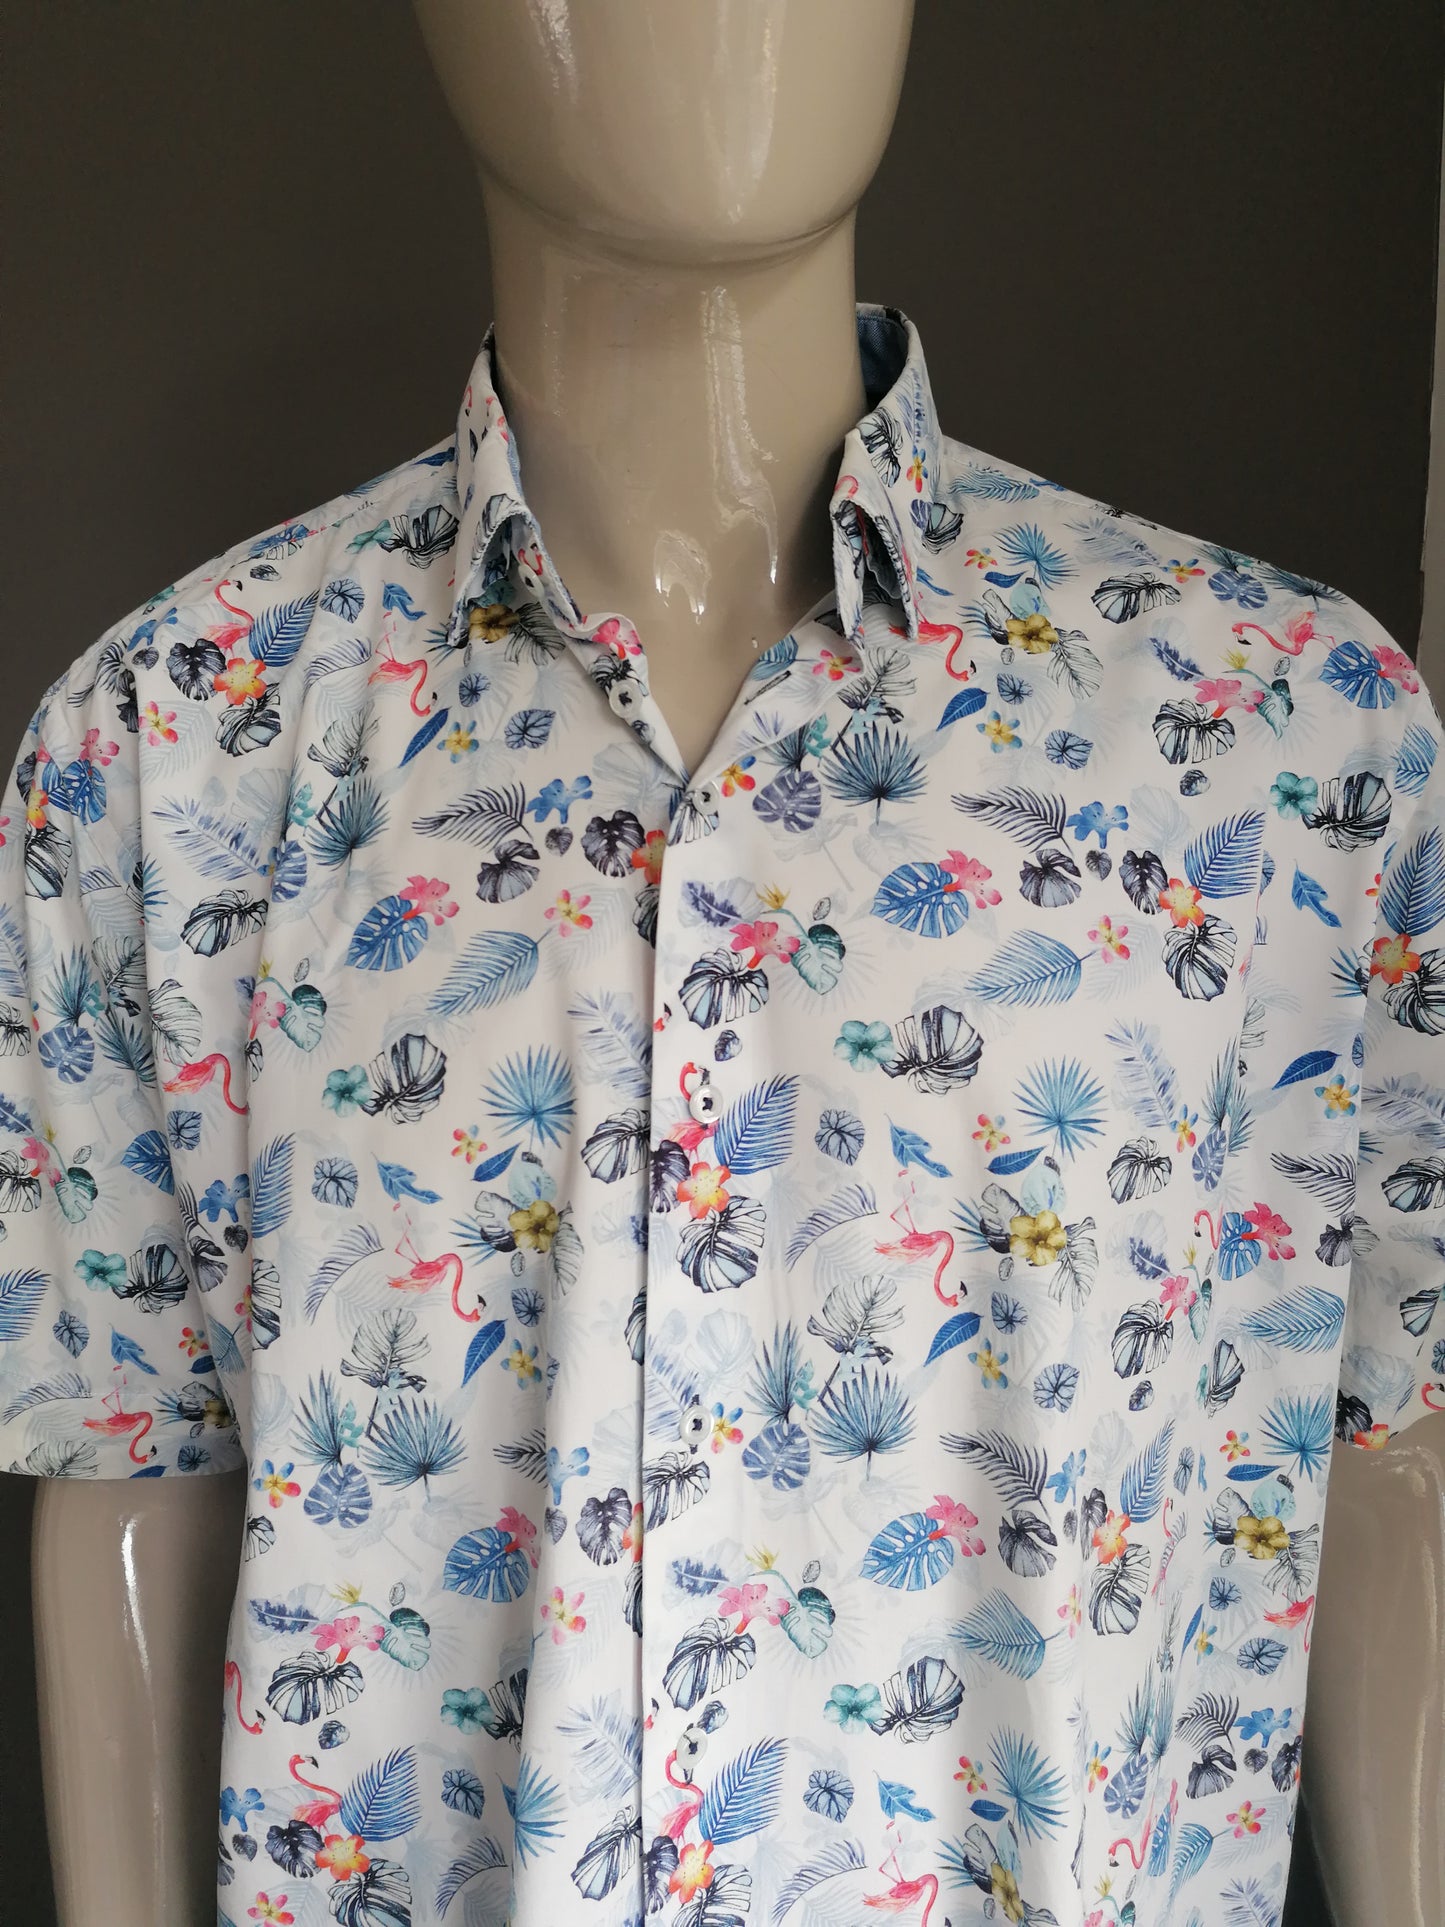 Claude Vigo camisa manga corta. Estampado de flamingo de flor rosa azul. Tamaño xxxl / 3xl. Ajuste regular.